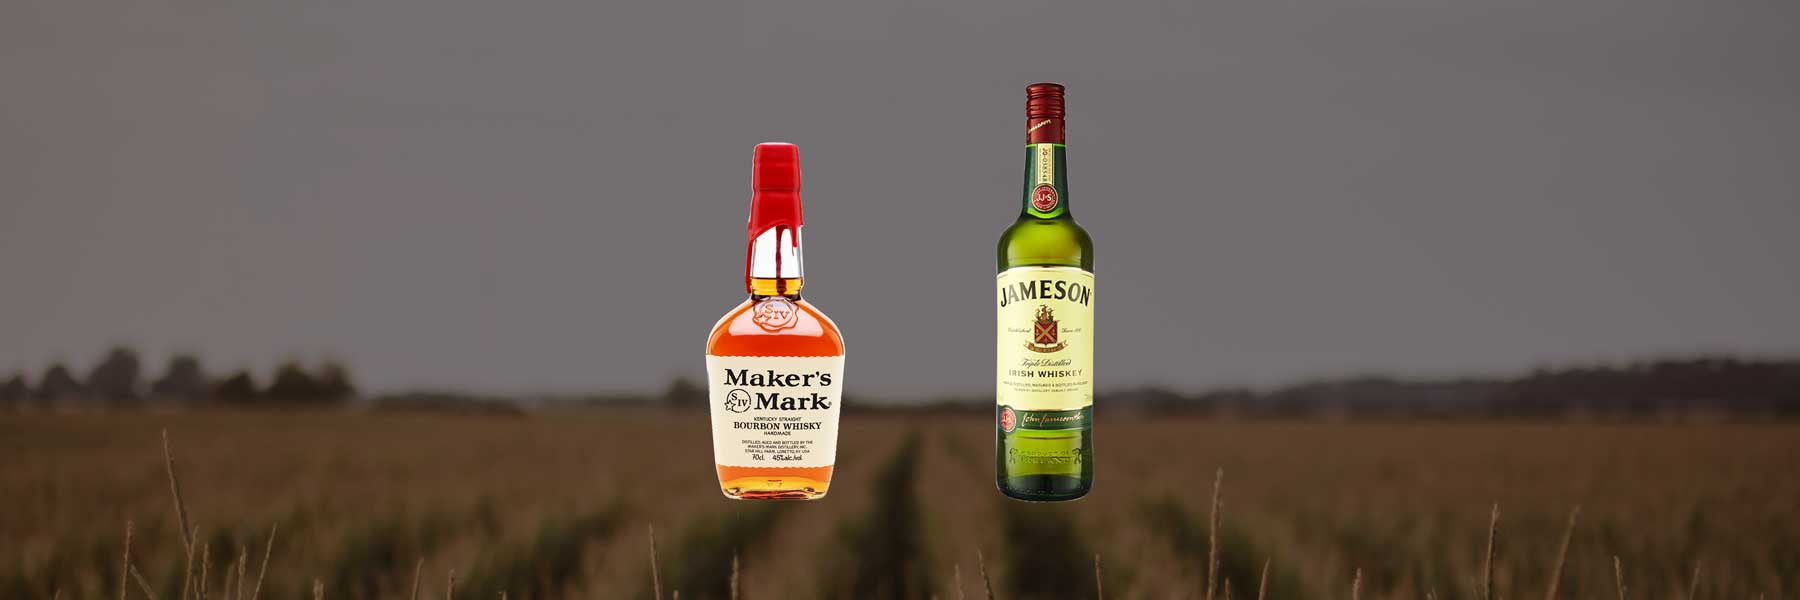 Maker's Mark vs Jameson